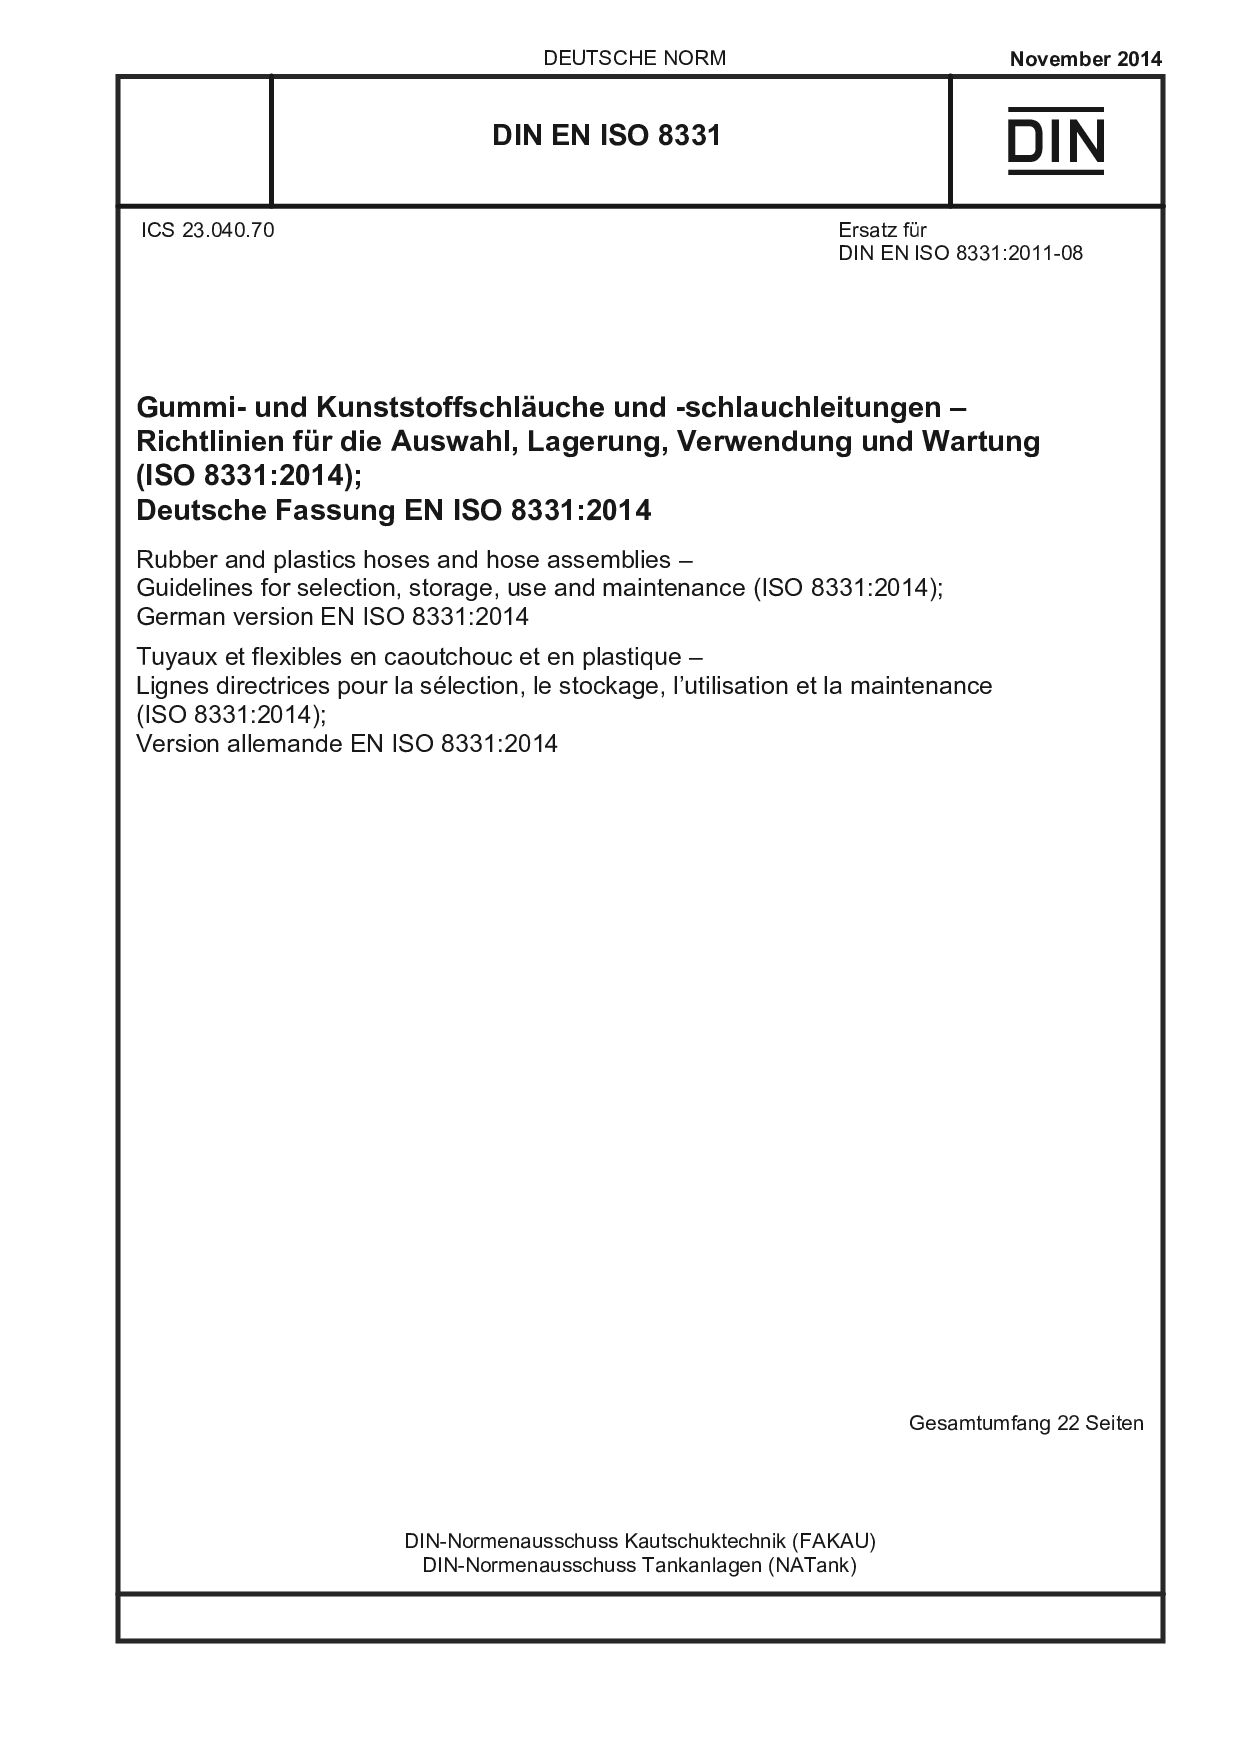 DIN EN ISO 8331:2014封面图